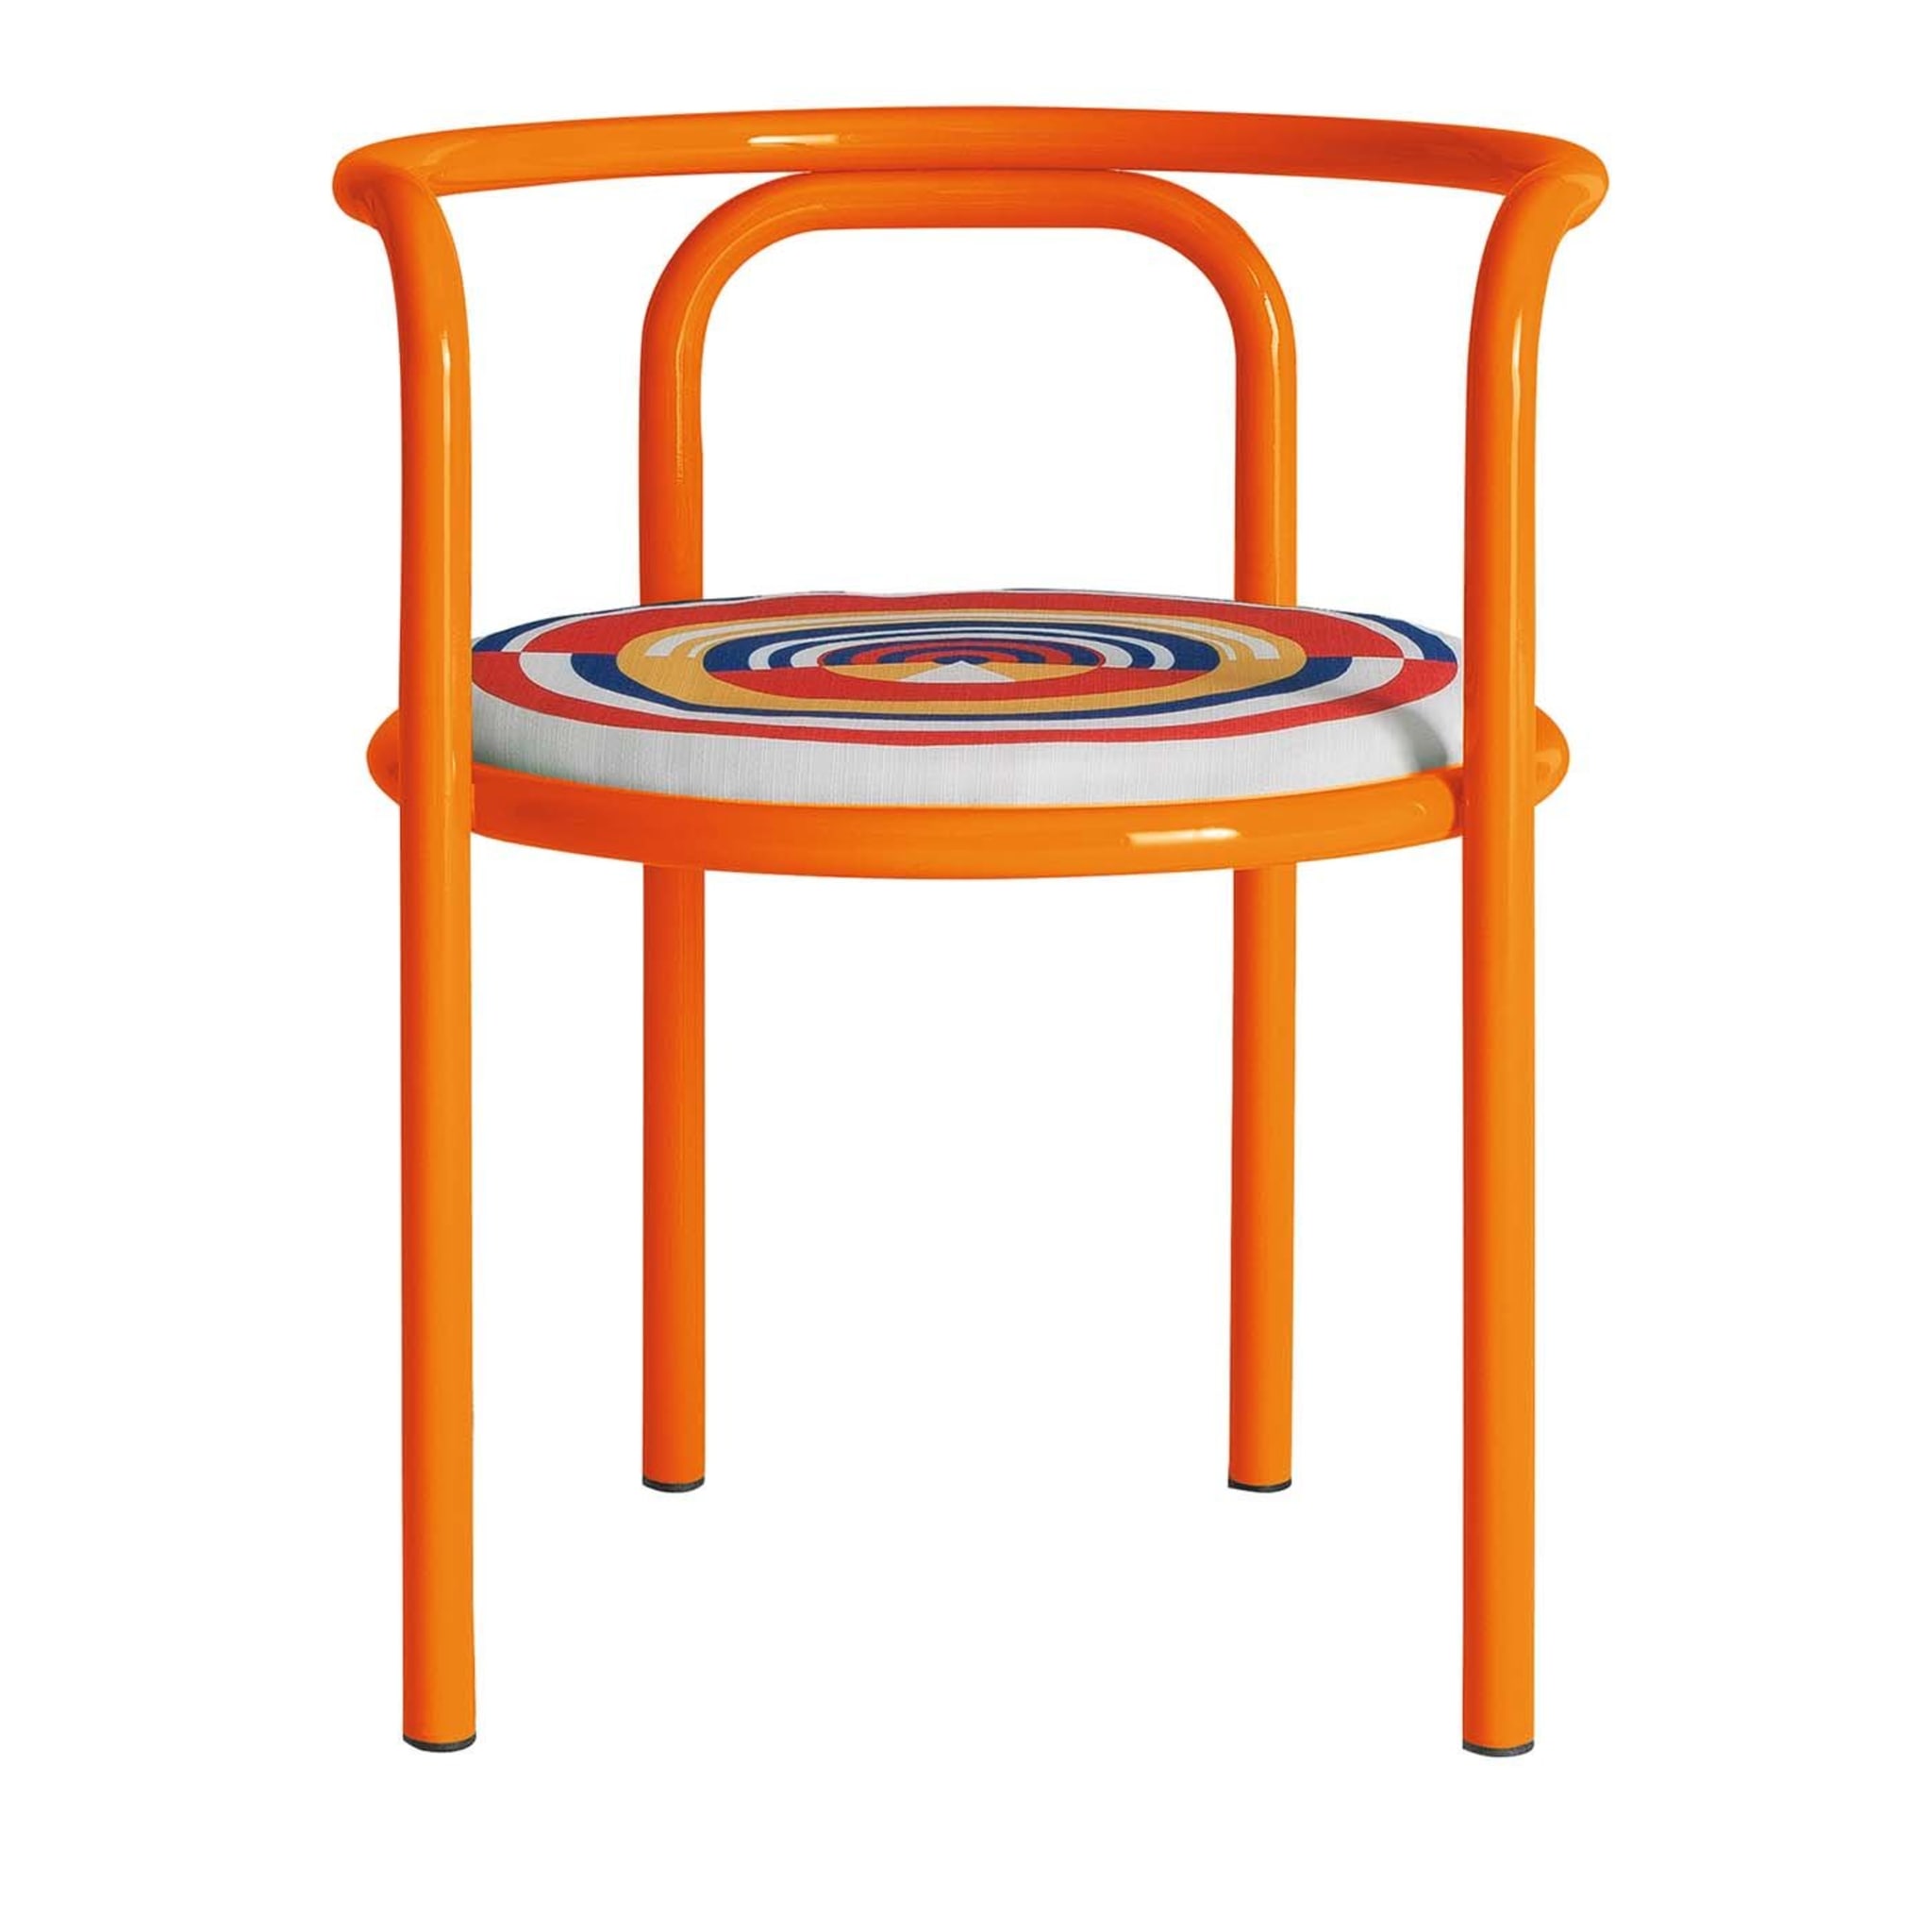 Locus Solus Orange Stuhl von Gae Aulenti - Hauptansicht